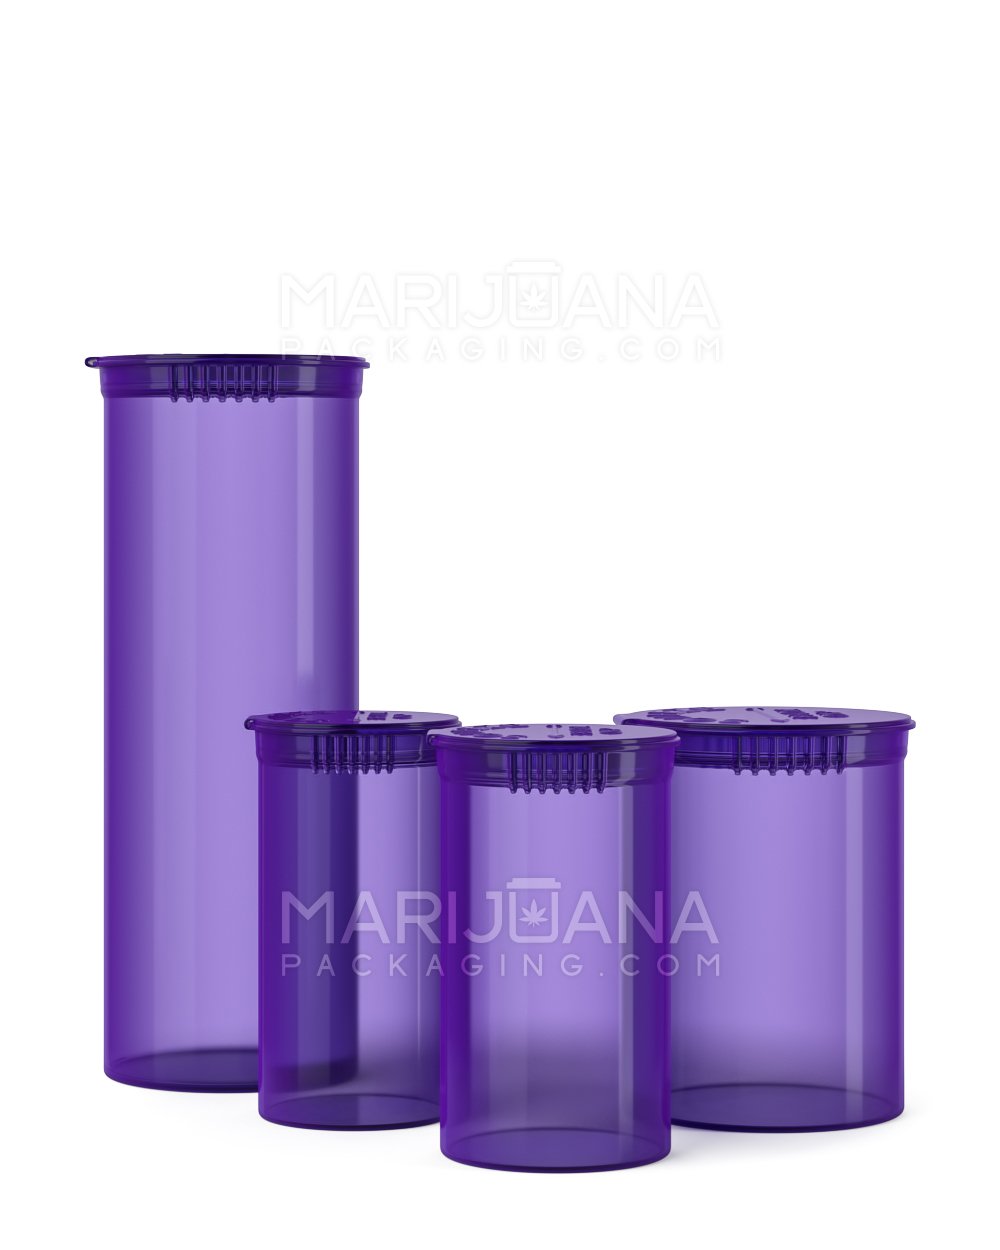 Child Resistant | Transparent Purple Pop Top Bottles | 60dr - 14g - 75 Count - 5